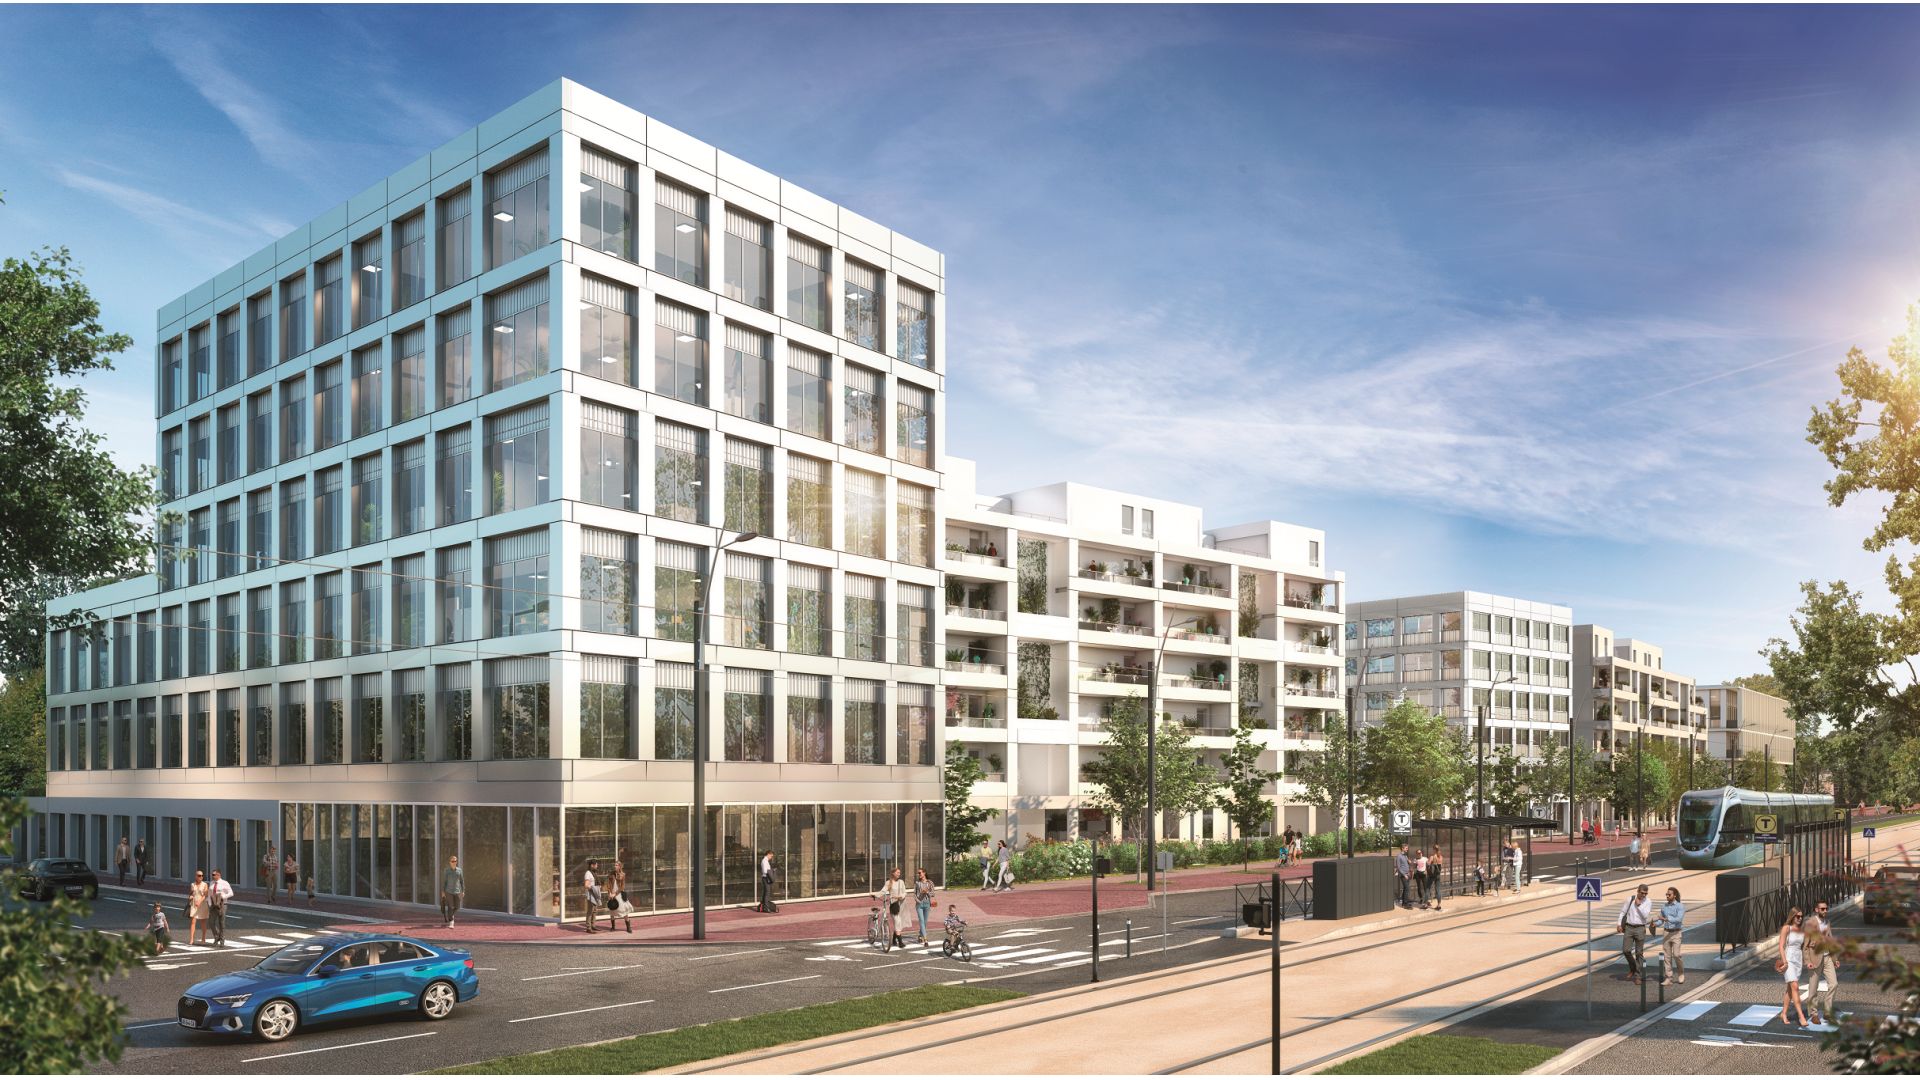 Greencity immobilier - achat appartements neufs du T1Bis au T6Duplex - Résidence MeetCity - 31700 Beauzelle